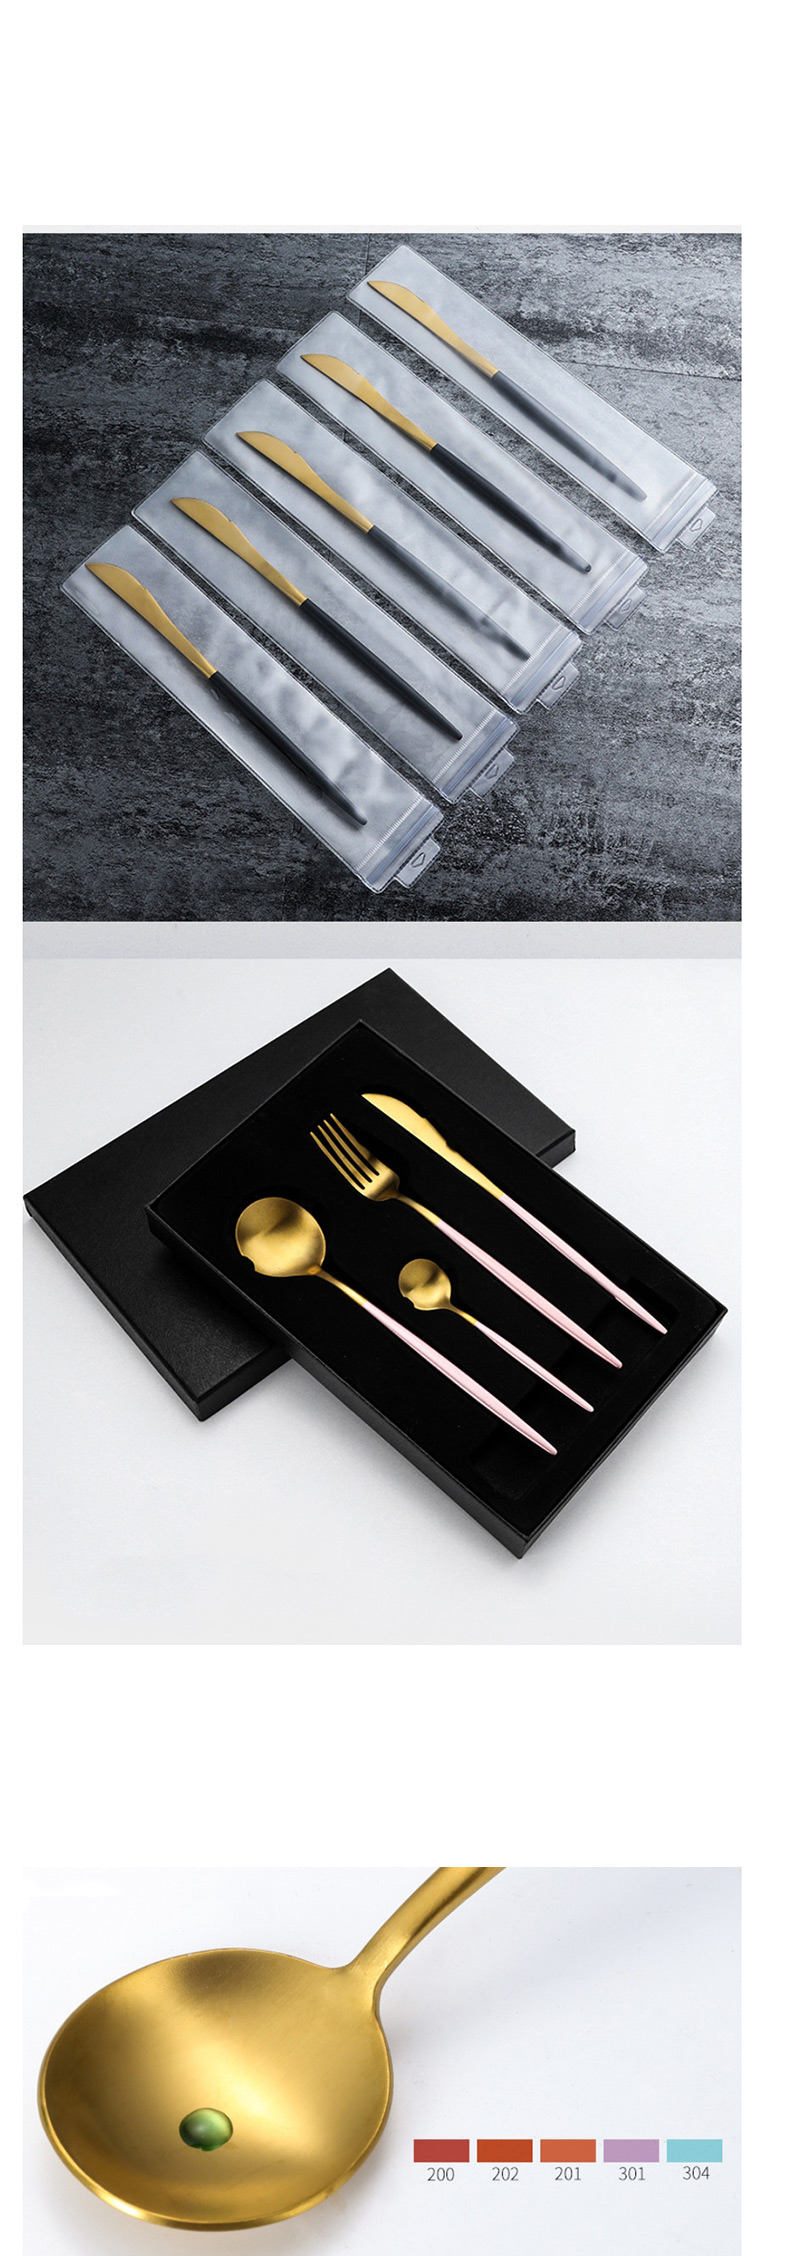 Fashion Platinum 4 Piece Set (cutlery Spoon + Chopsticks) 304 Stainless Steel Cutlery Cutlery Set,Kitchen